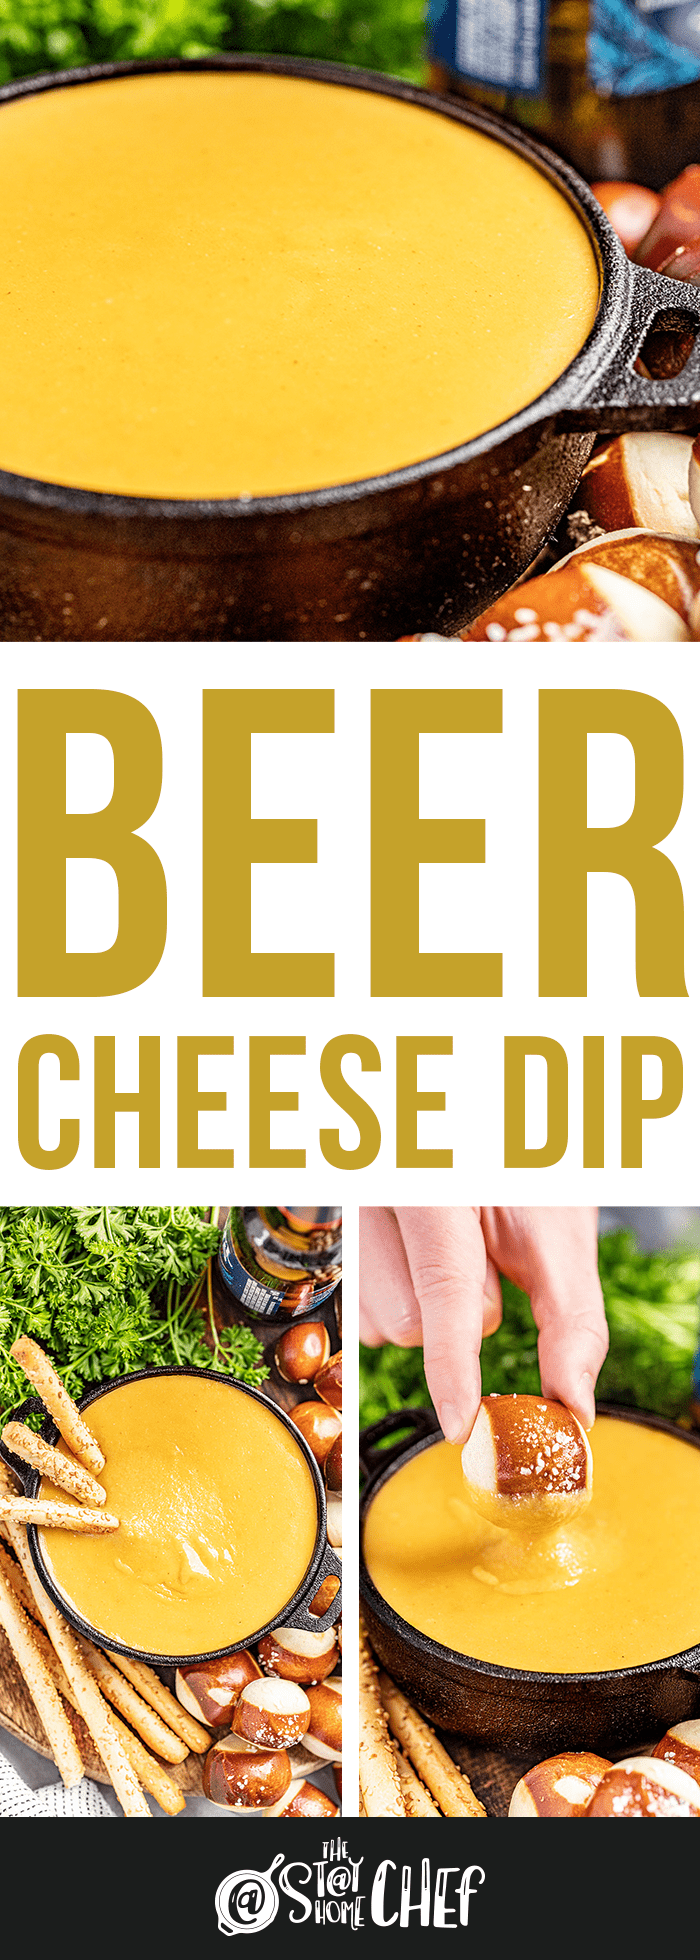 Beer Cheese Dip